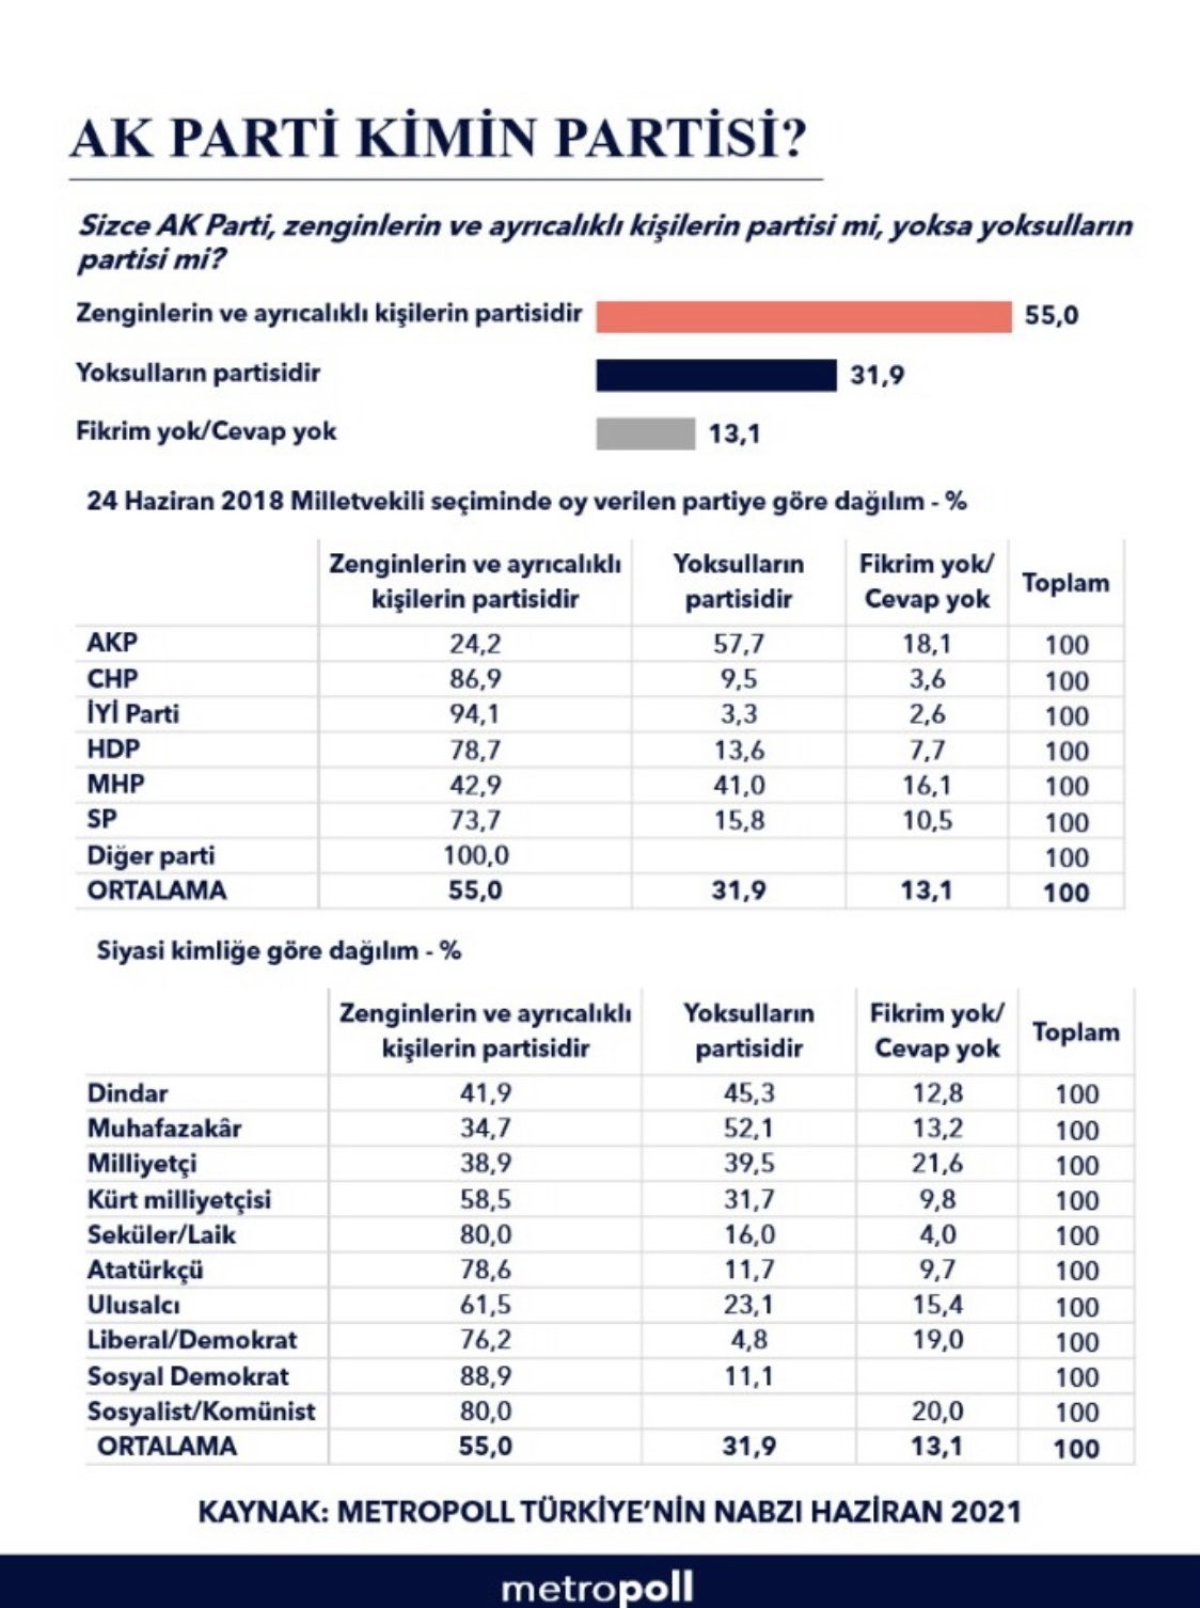 <p>Sencar yaptığı paylaşımına, "Haziran 2021 araştırmasında sorduğumuz "AK Parti zenginlerin partisi mi yoksa yoksulların Partisi mi?” sorusuna seçmenlerin yüzde 55 zenginlerin partisi olduğunu söylüyor" notu da düştü.</p>